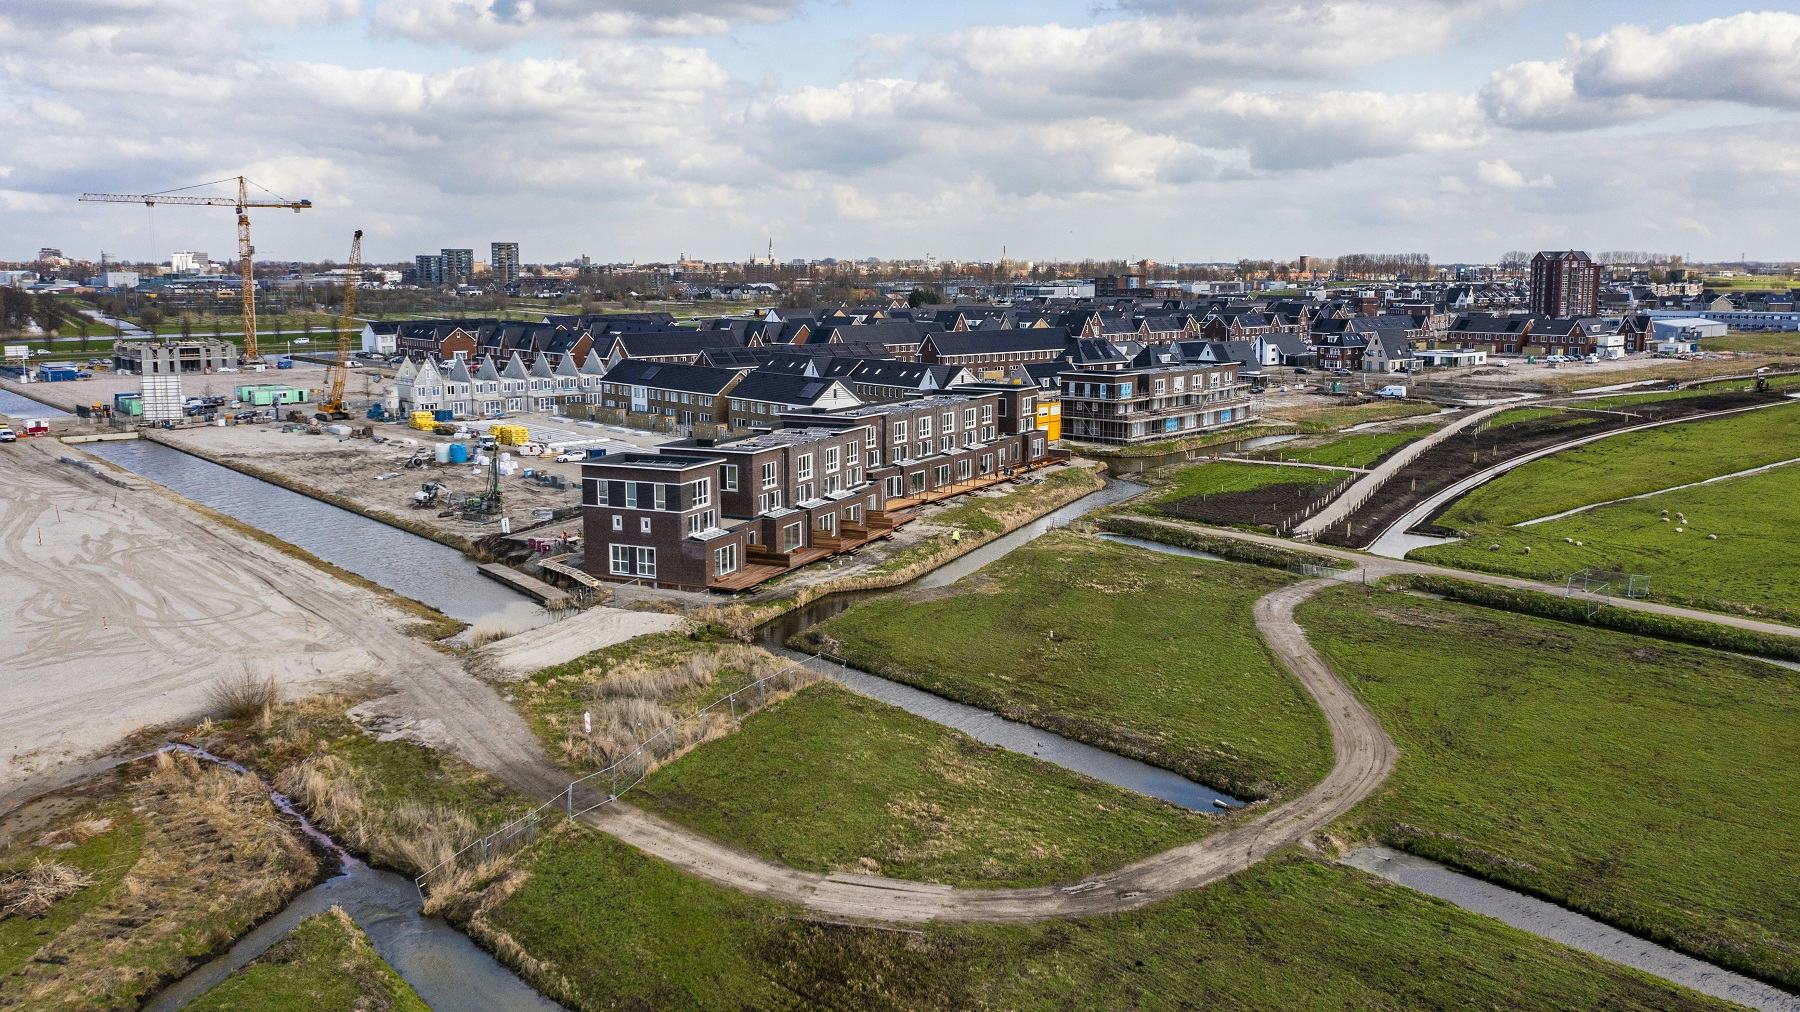 Op nieuwbouwlocatie Westergouwe bij Gouda moet een klimaatadaptieve wijk verrijzen. Foto: ANP